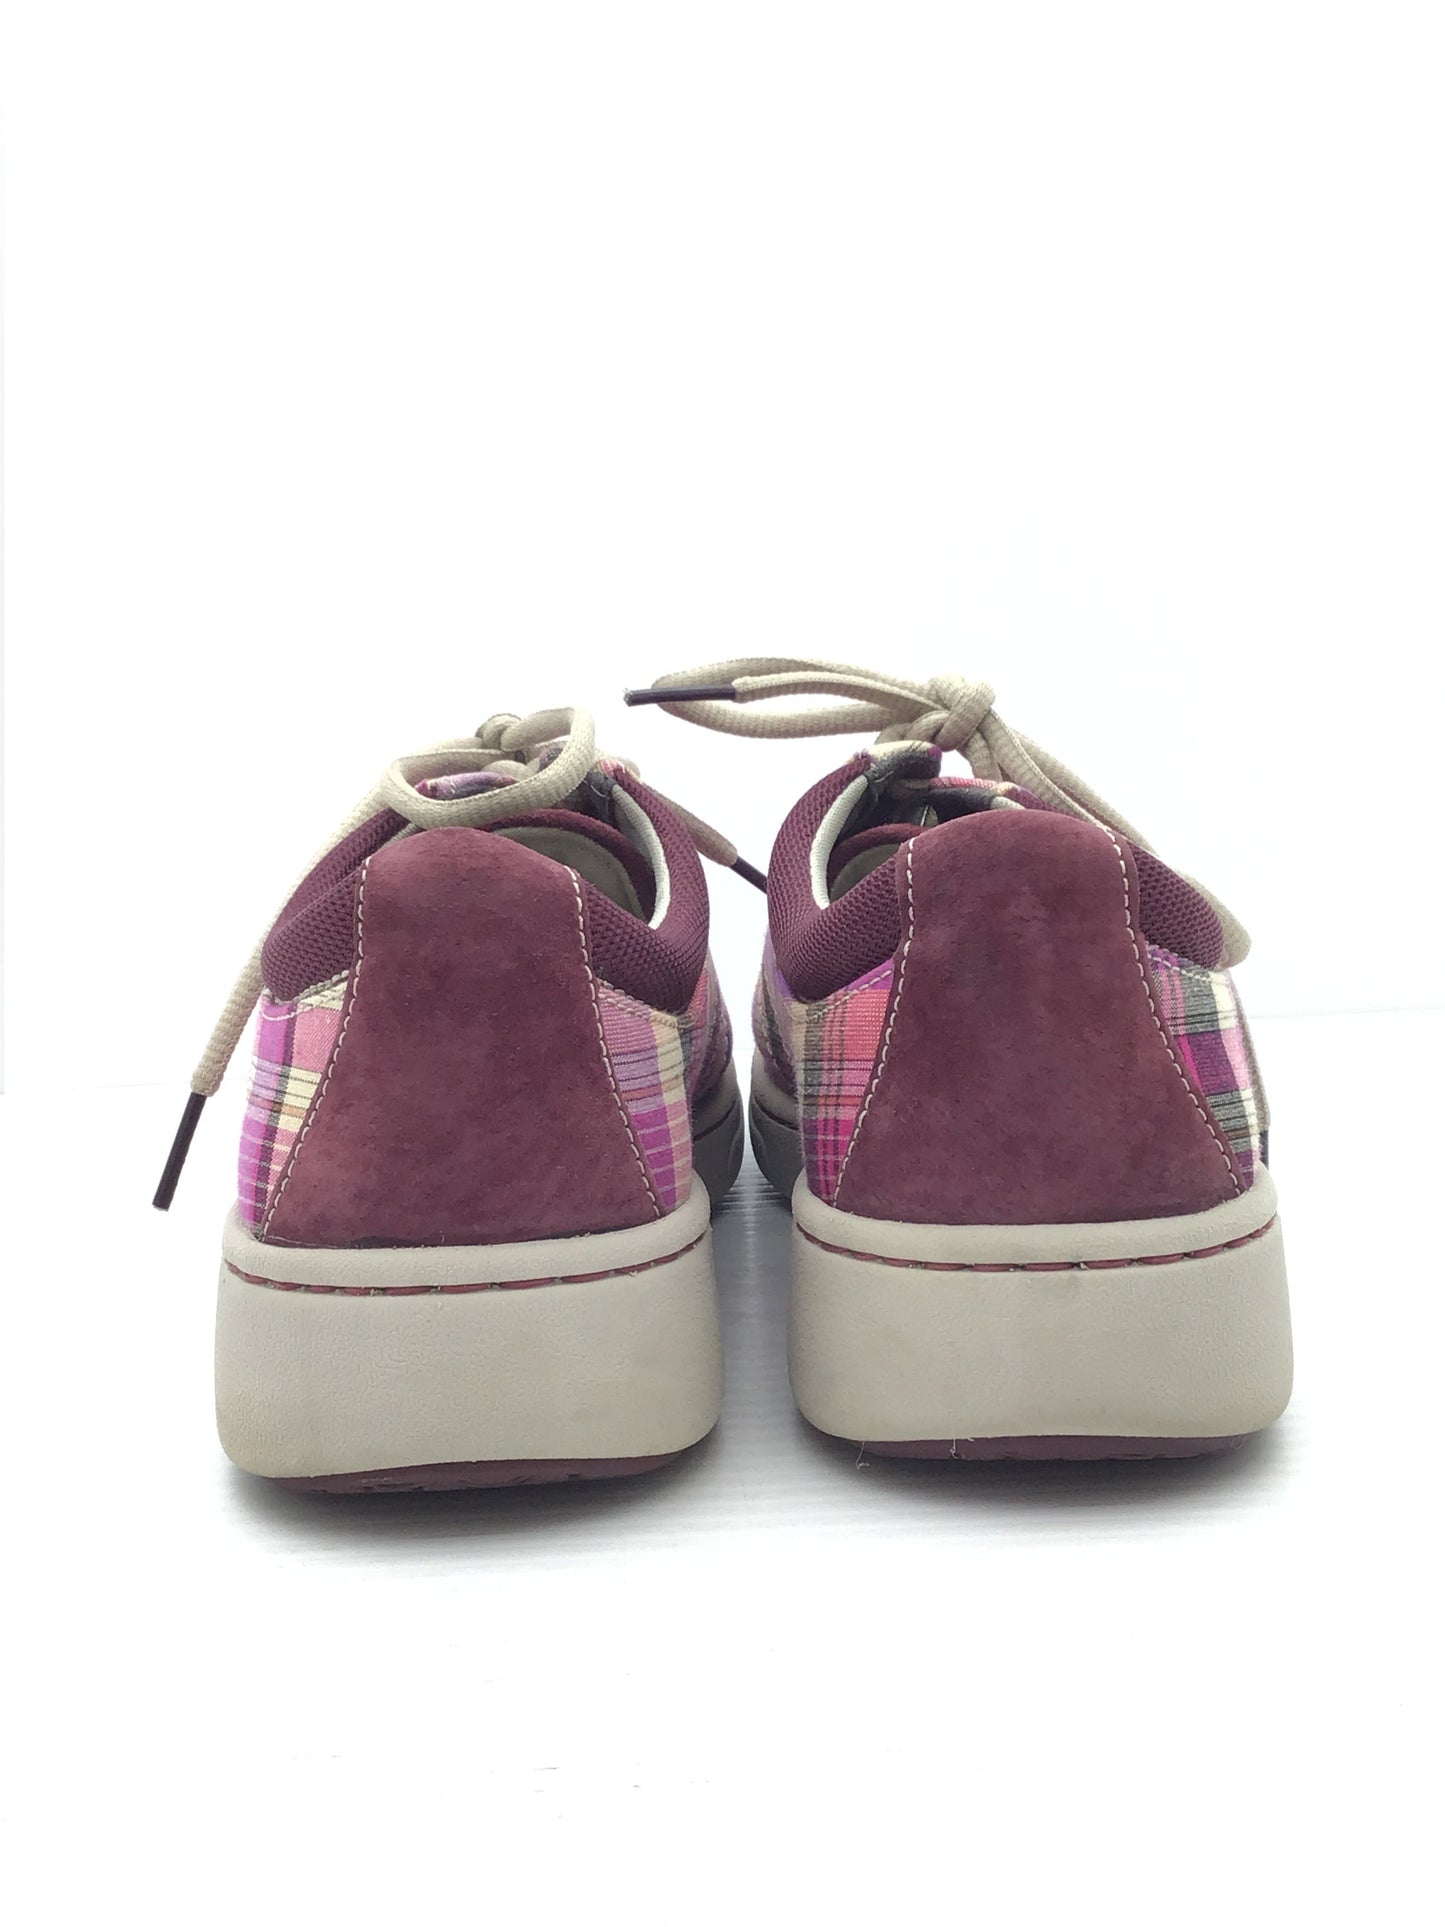 Shoes Sneakers By Dansko  Size: 7.5